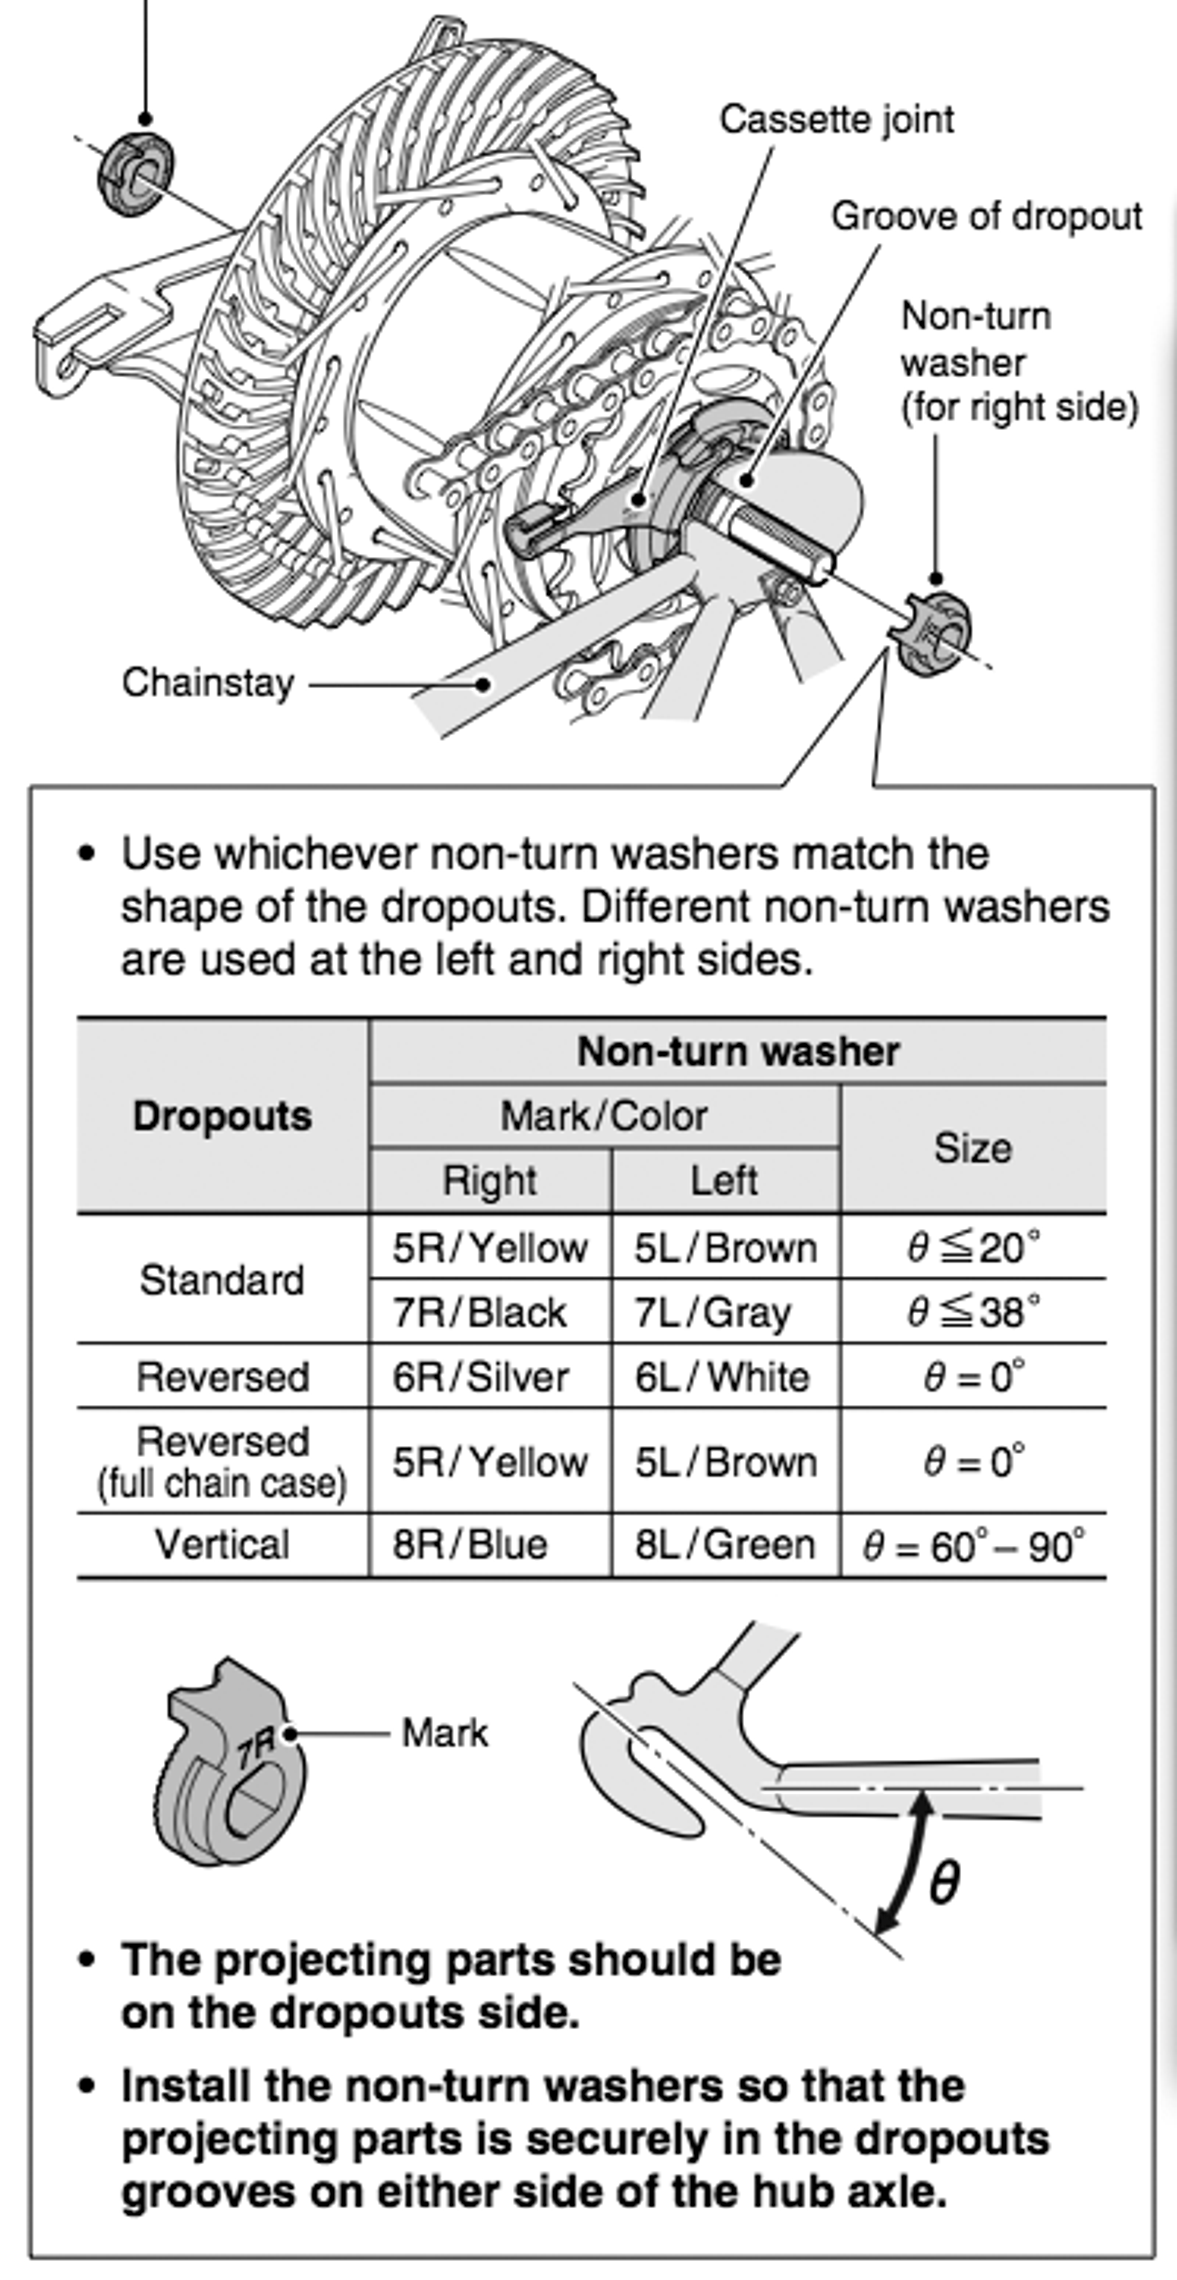 6R Silver Shimano Nexus/Alfine Track-type Dropout Right Non-turn Washer 